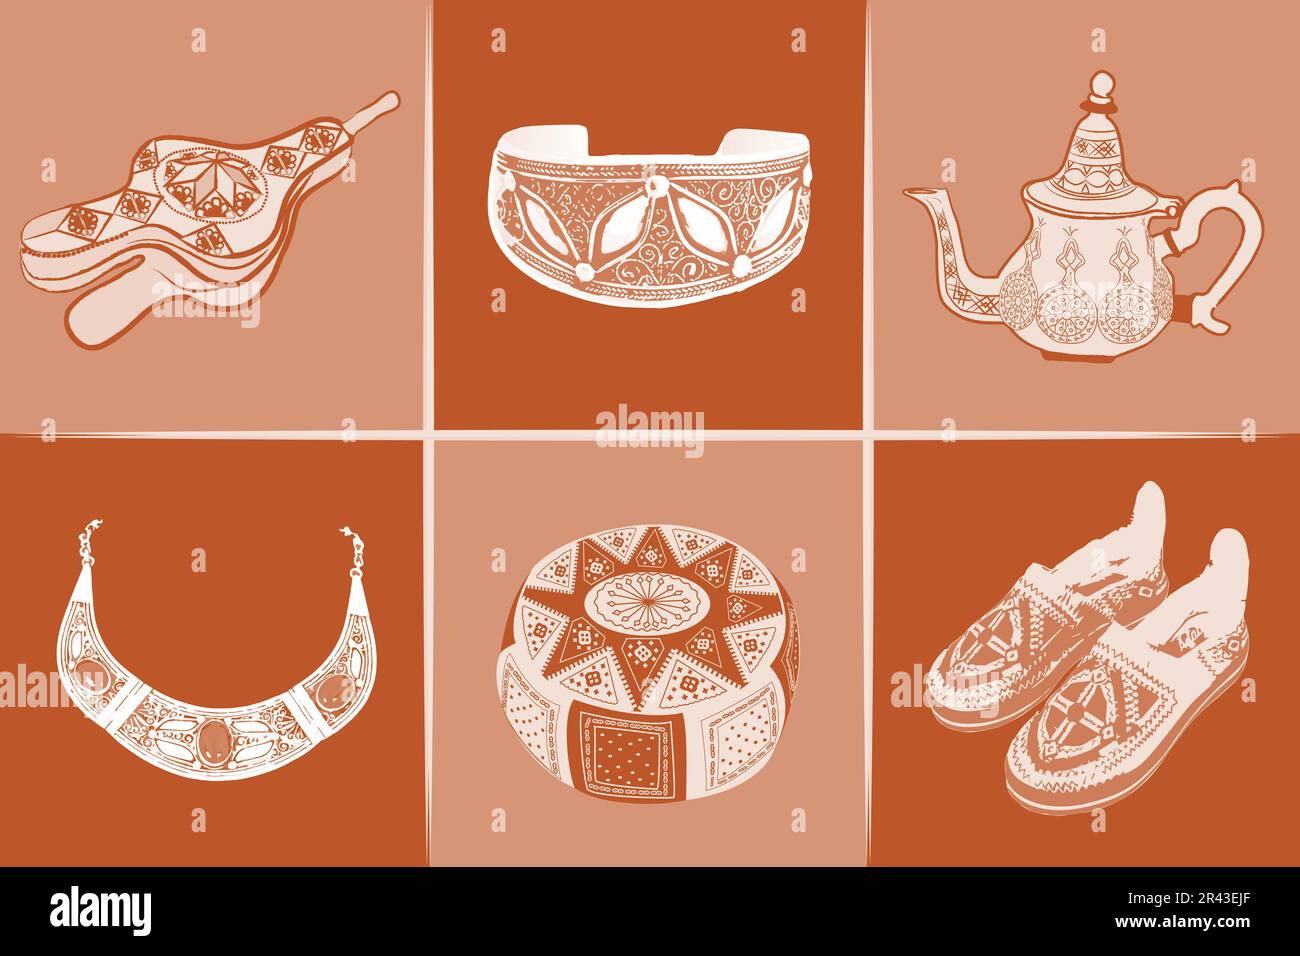 ENSEMBLE de symboles culturels marocains. Collection Maroc Voyage d'icônes Vector isolé illustration, couleurs terre cuite Illustration de Vecteur